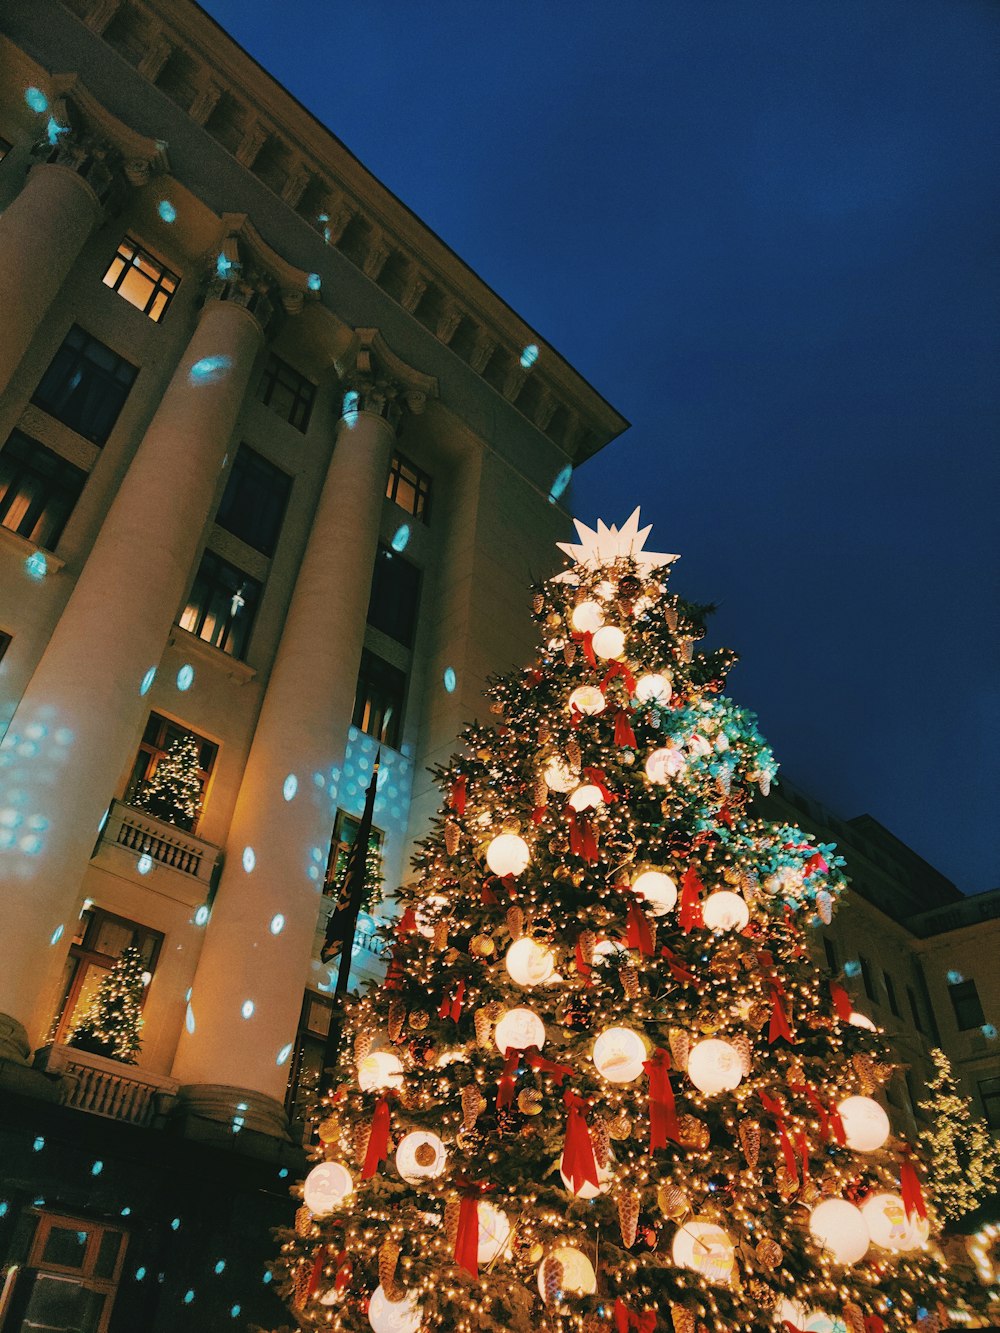 Weihnachtsbaum mit Lichterketten in der Nähe von braunem Betongebäude während der Nachtzeit